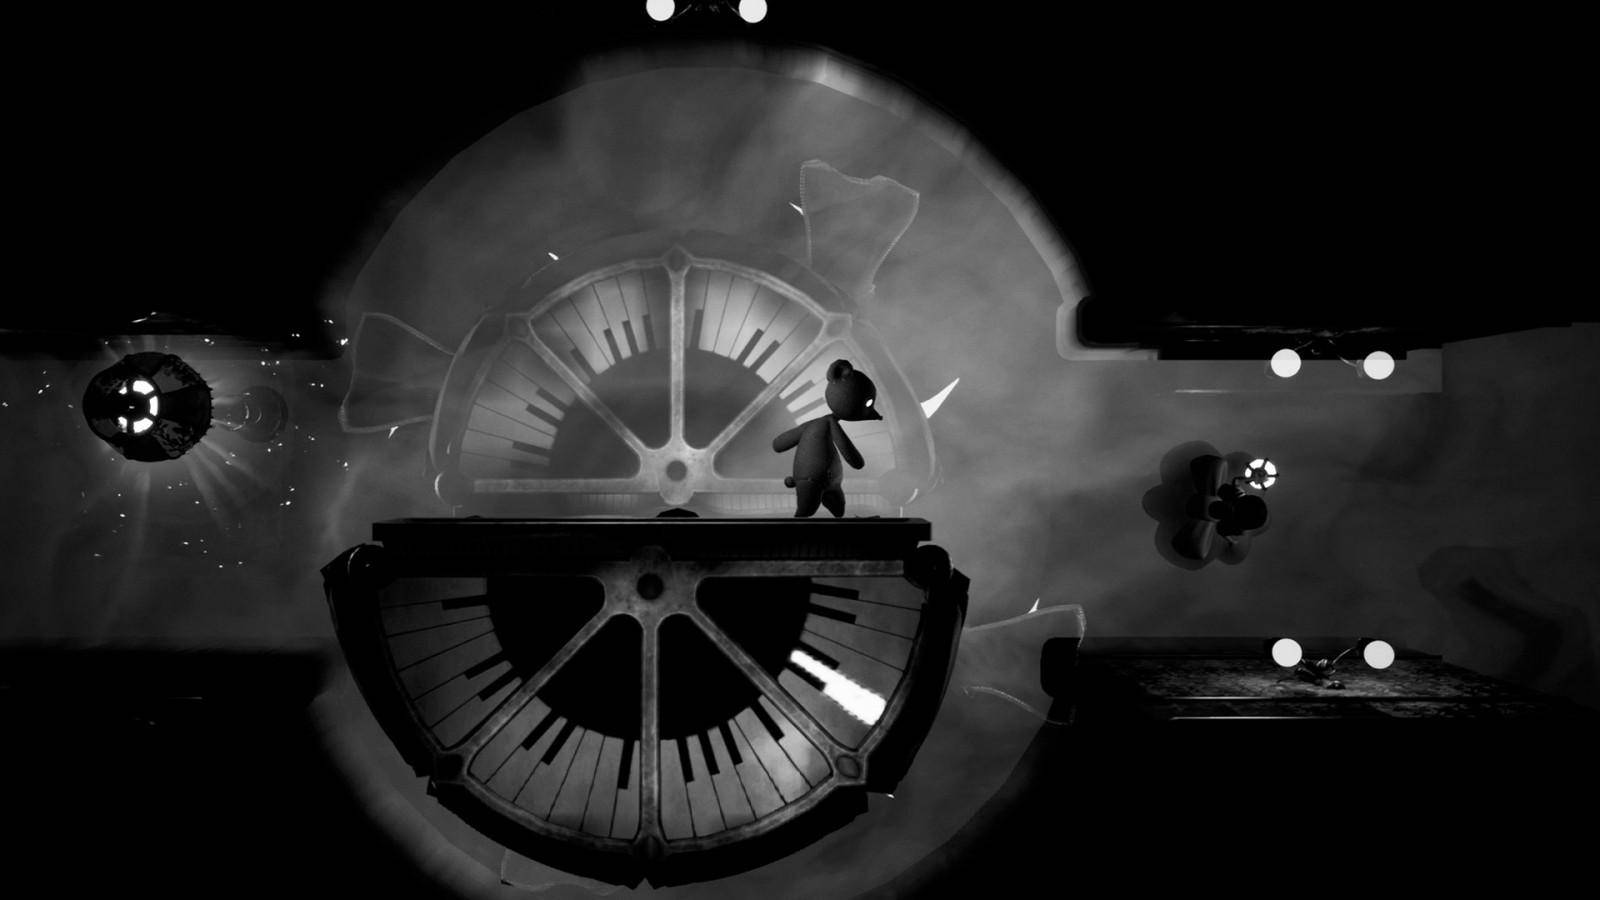 Tandem: A Tale of Shadows saldrá este 2021 en PlayStation 4, Switch, PC y Xbox One 1